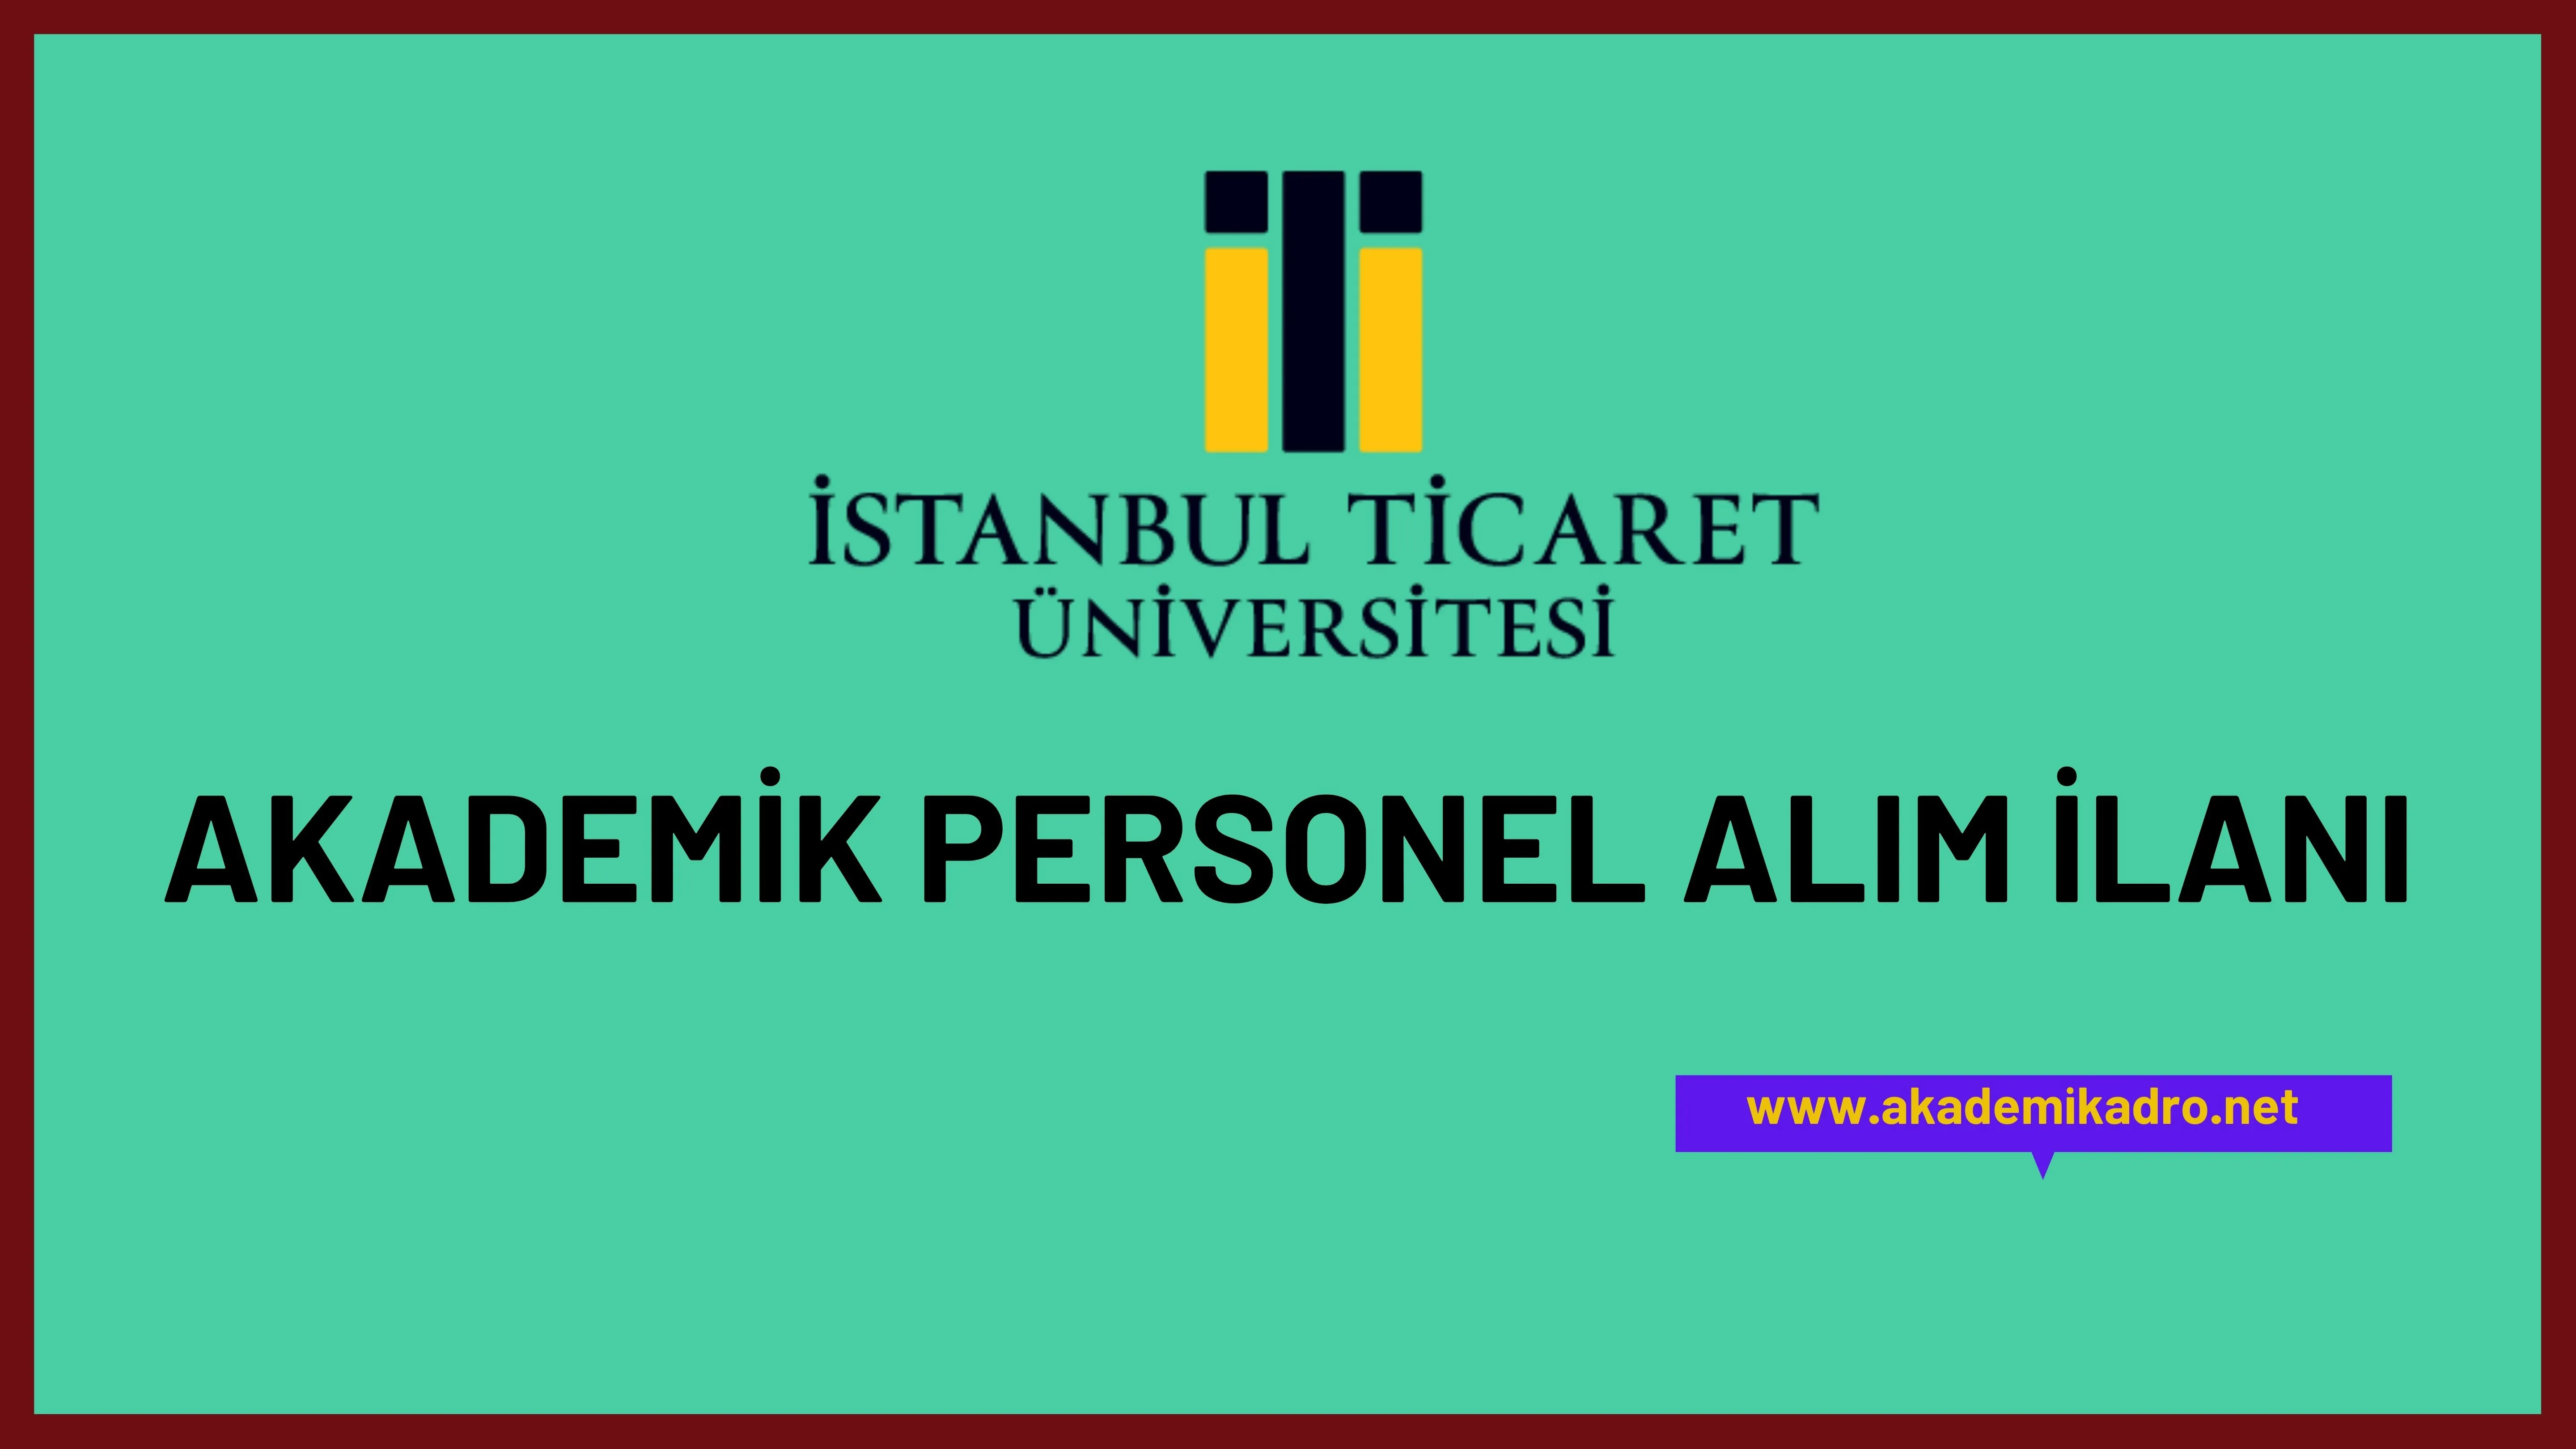 İstanbul Ticaret Üniversitesi çeşitli branşlarda 13 akademik personel alacak.